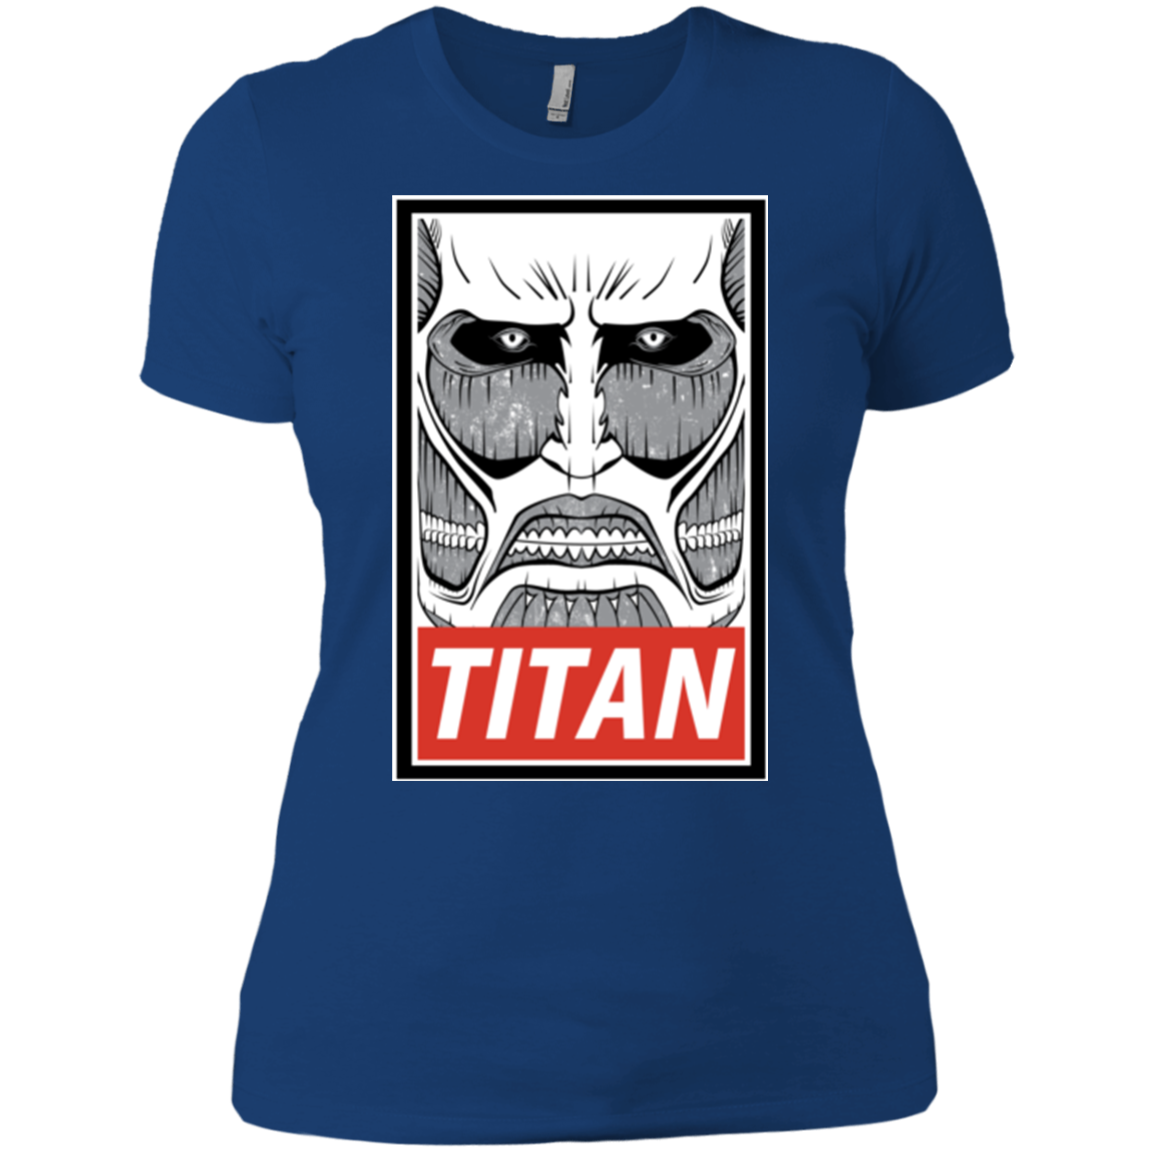 Titan Women's Premium T-Shirt